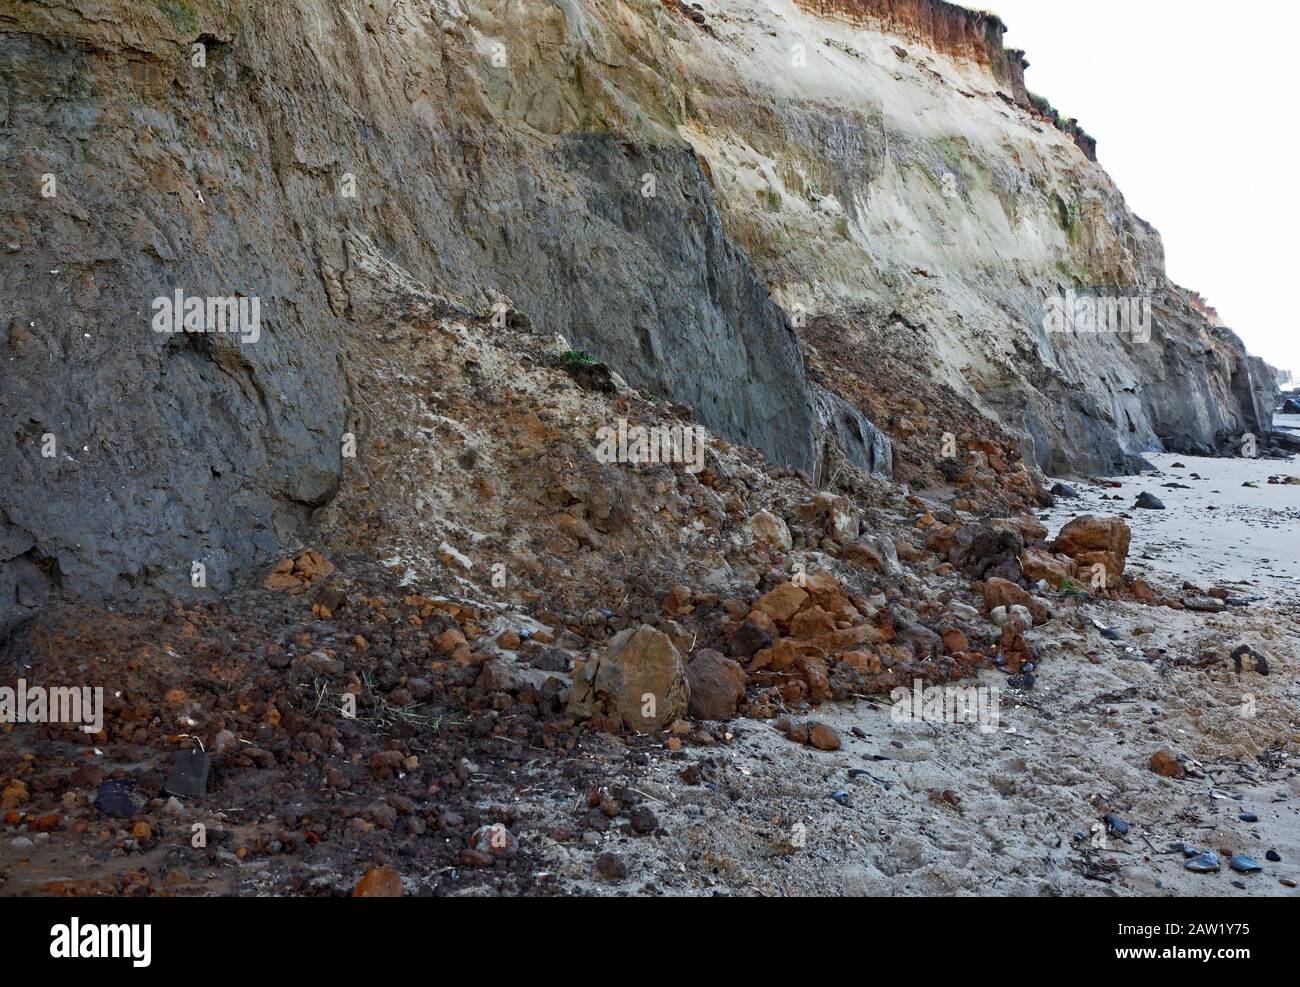 Frane da scogliere composte principalmente di sedimenti glaciali e soggetti a erosione costiera a Happisburgh, Norfolk, Inghilterra, Regno Unito, Europa. Foto Stock